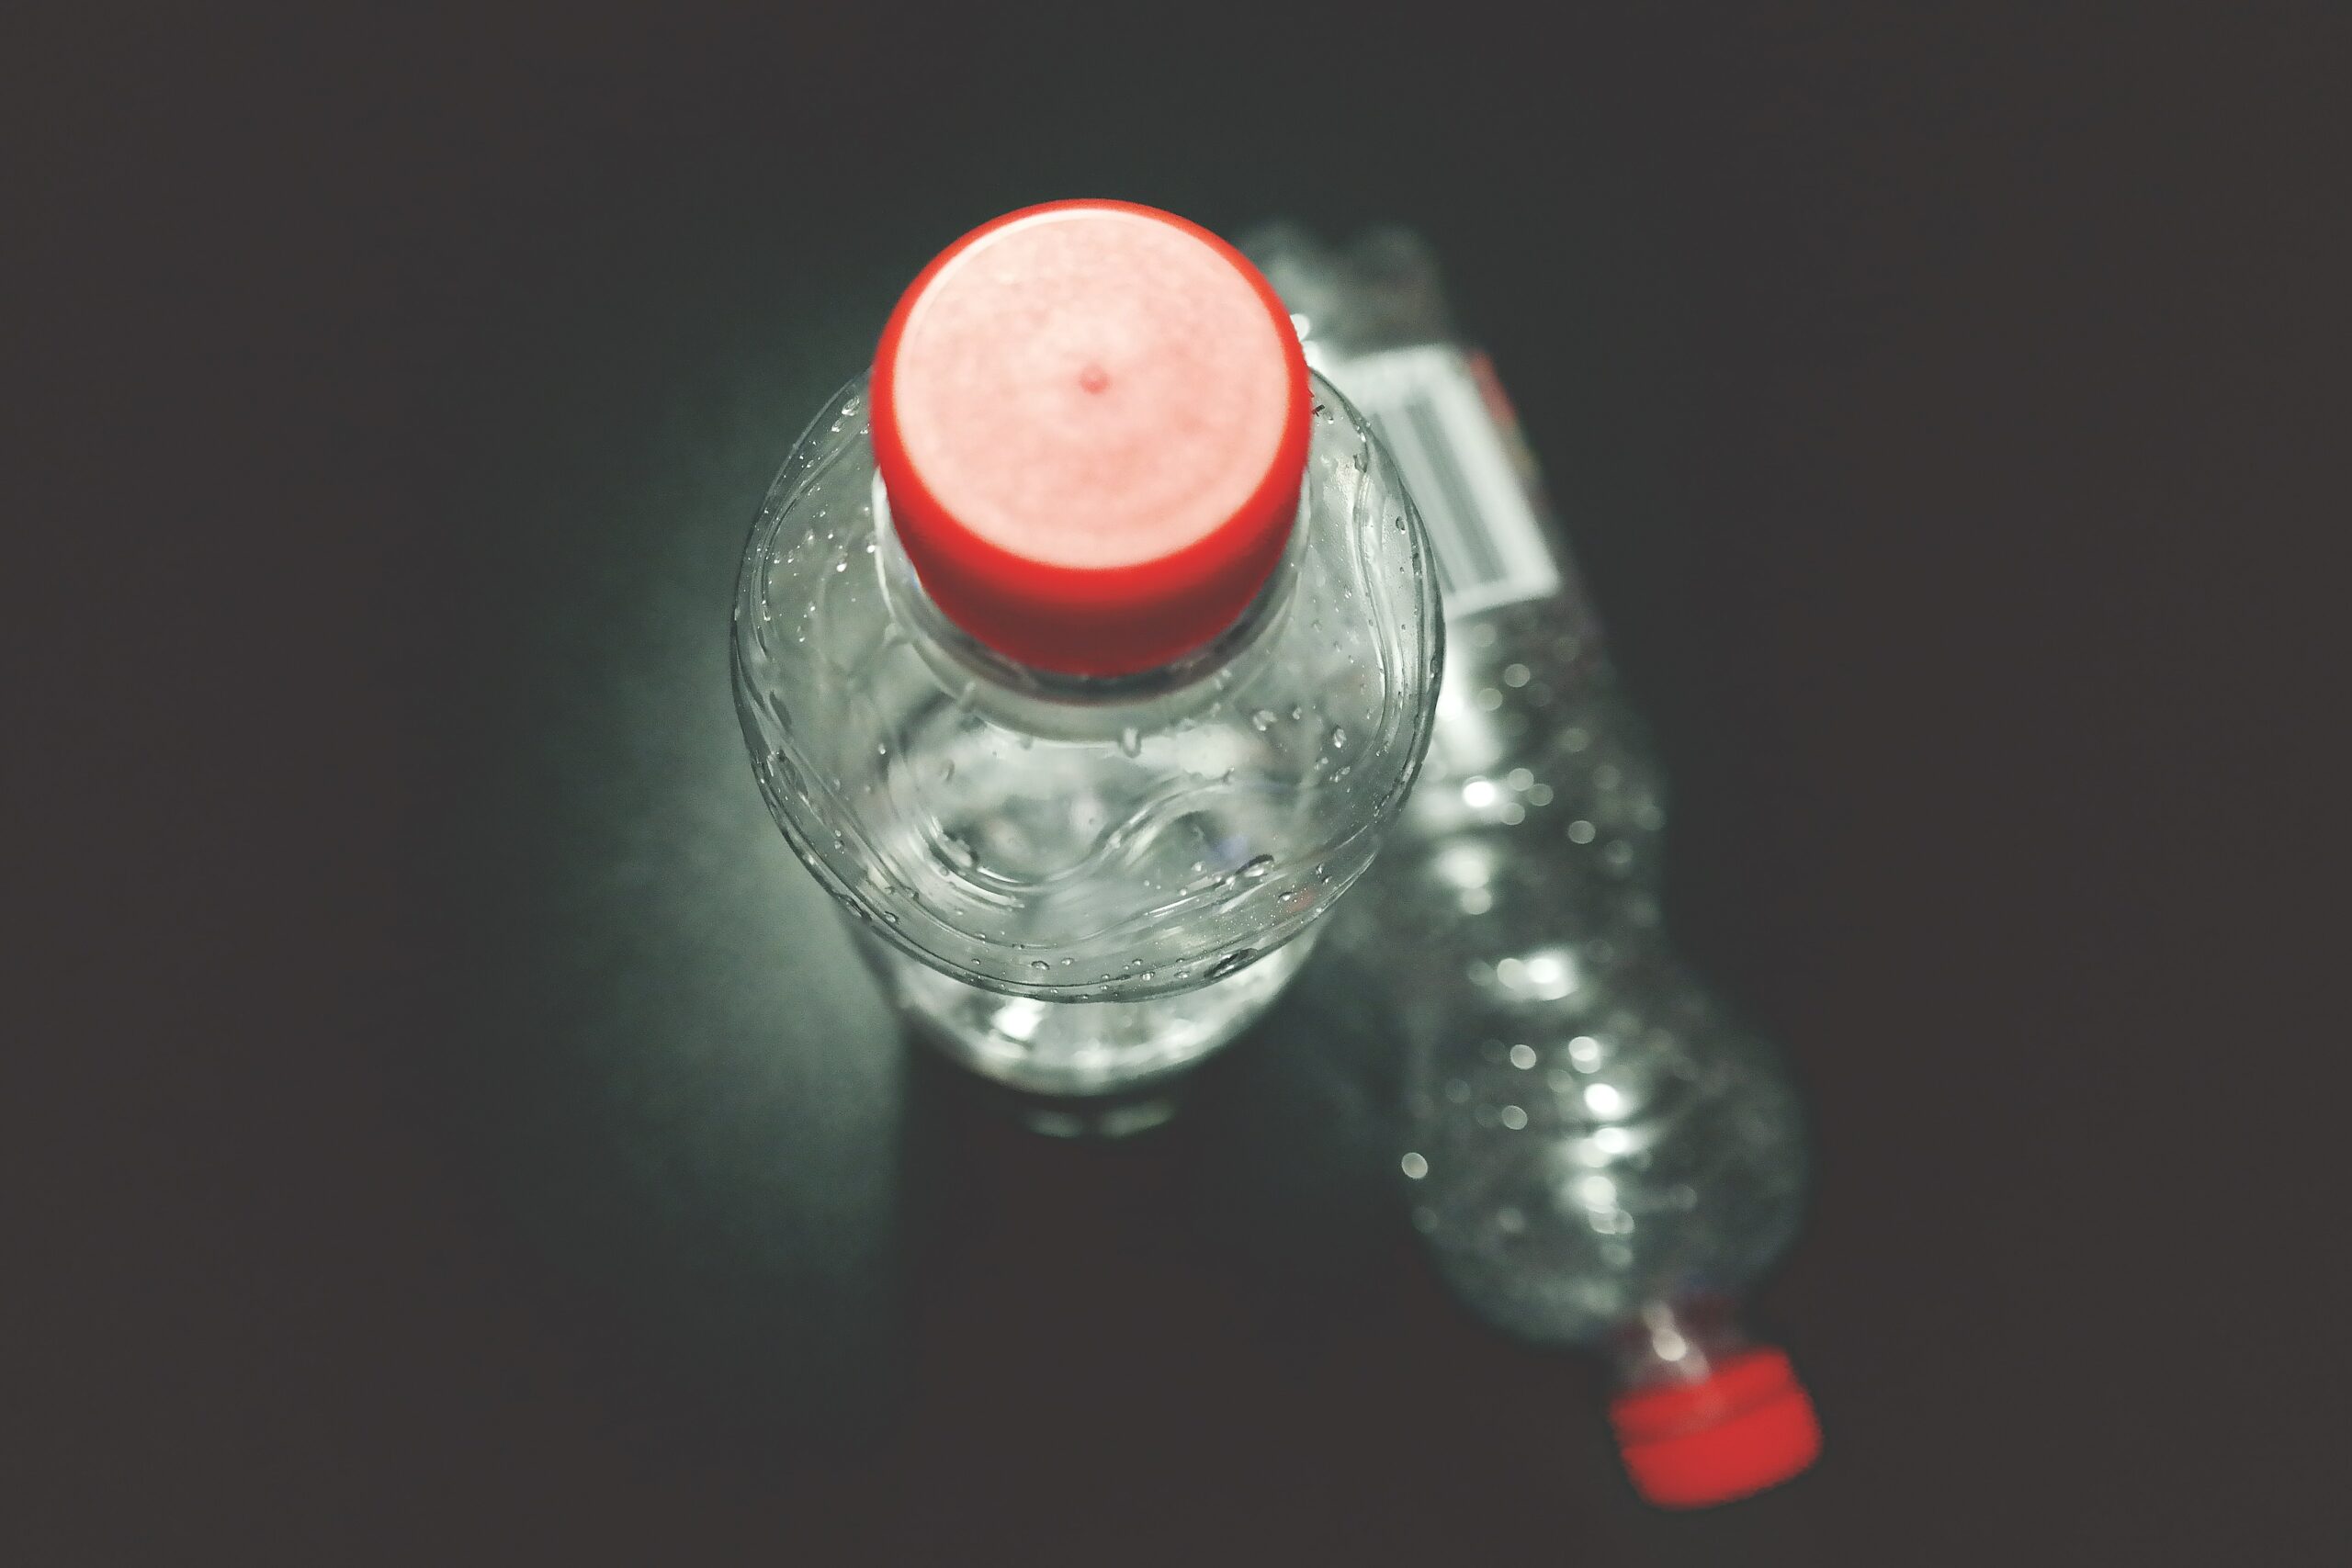 Botellas de plástico: tipos y reciclaje